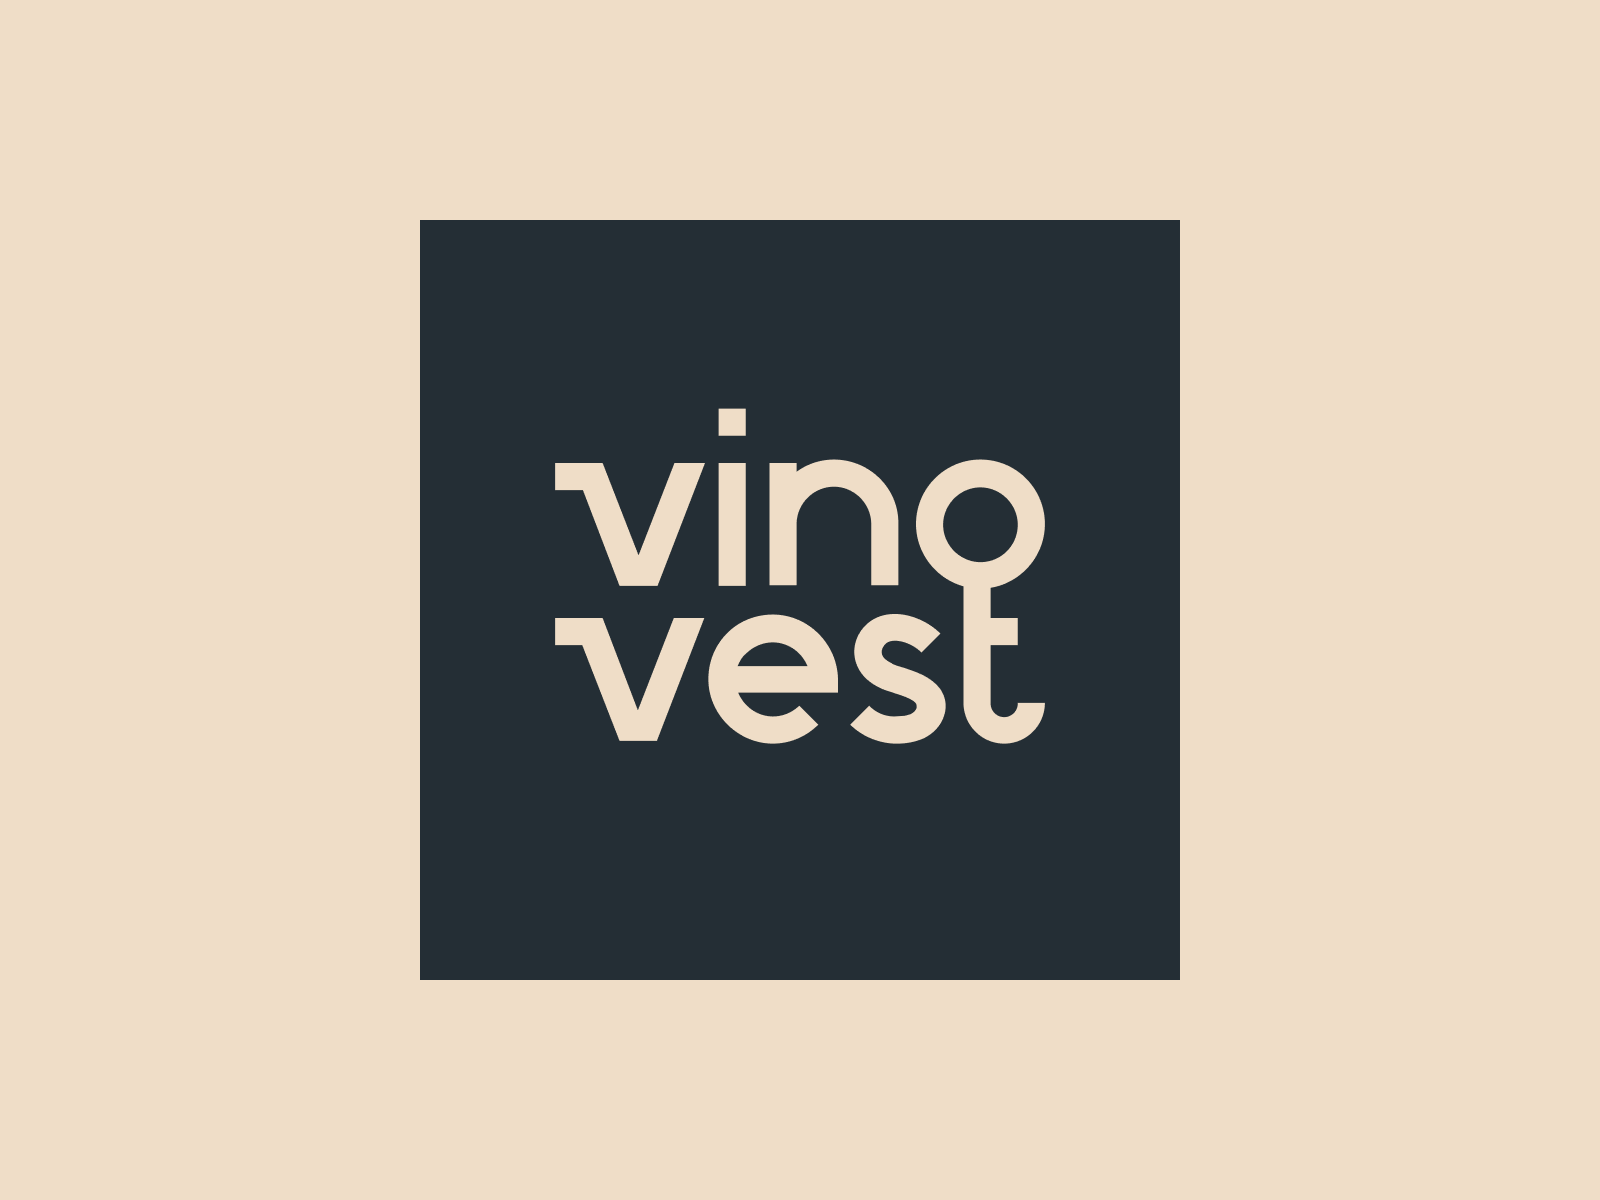 Vinovest Logo brand book brand guide brand identity branding agency custom type direct to consumer invest investing logo logos wine wine investing work mark